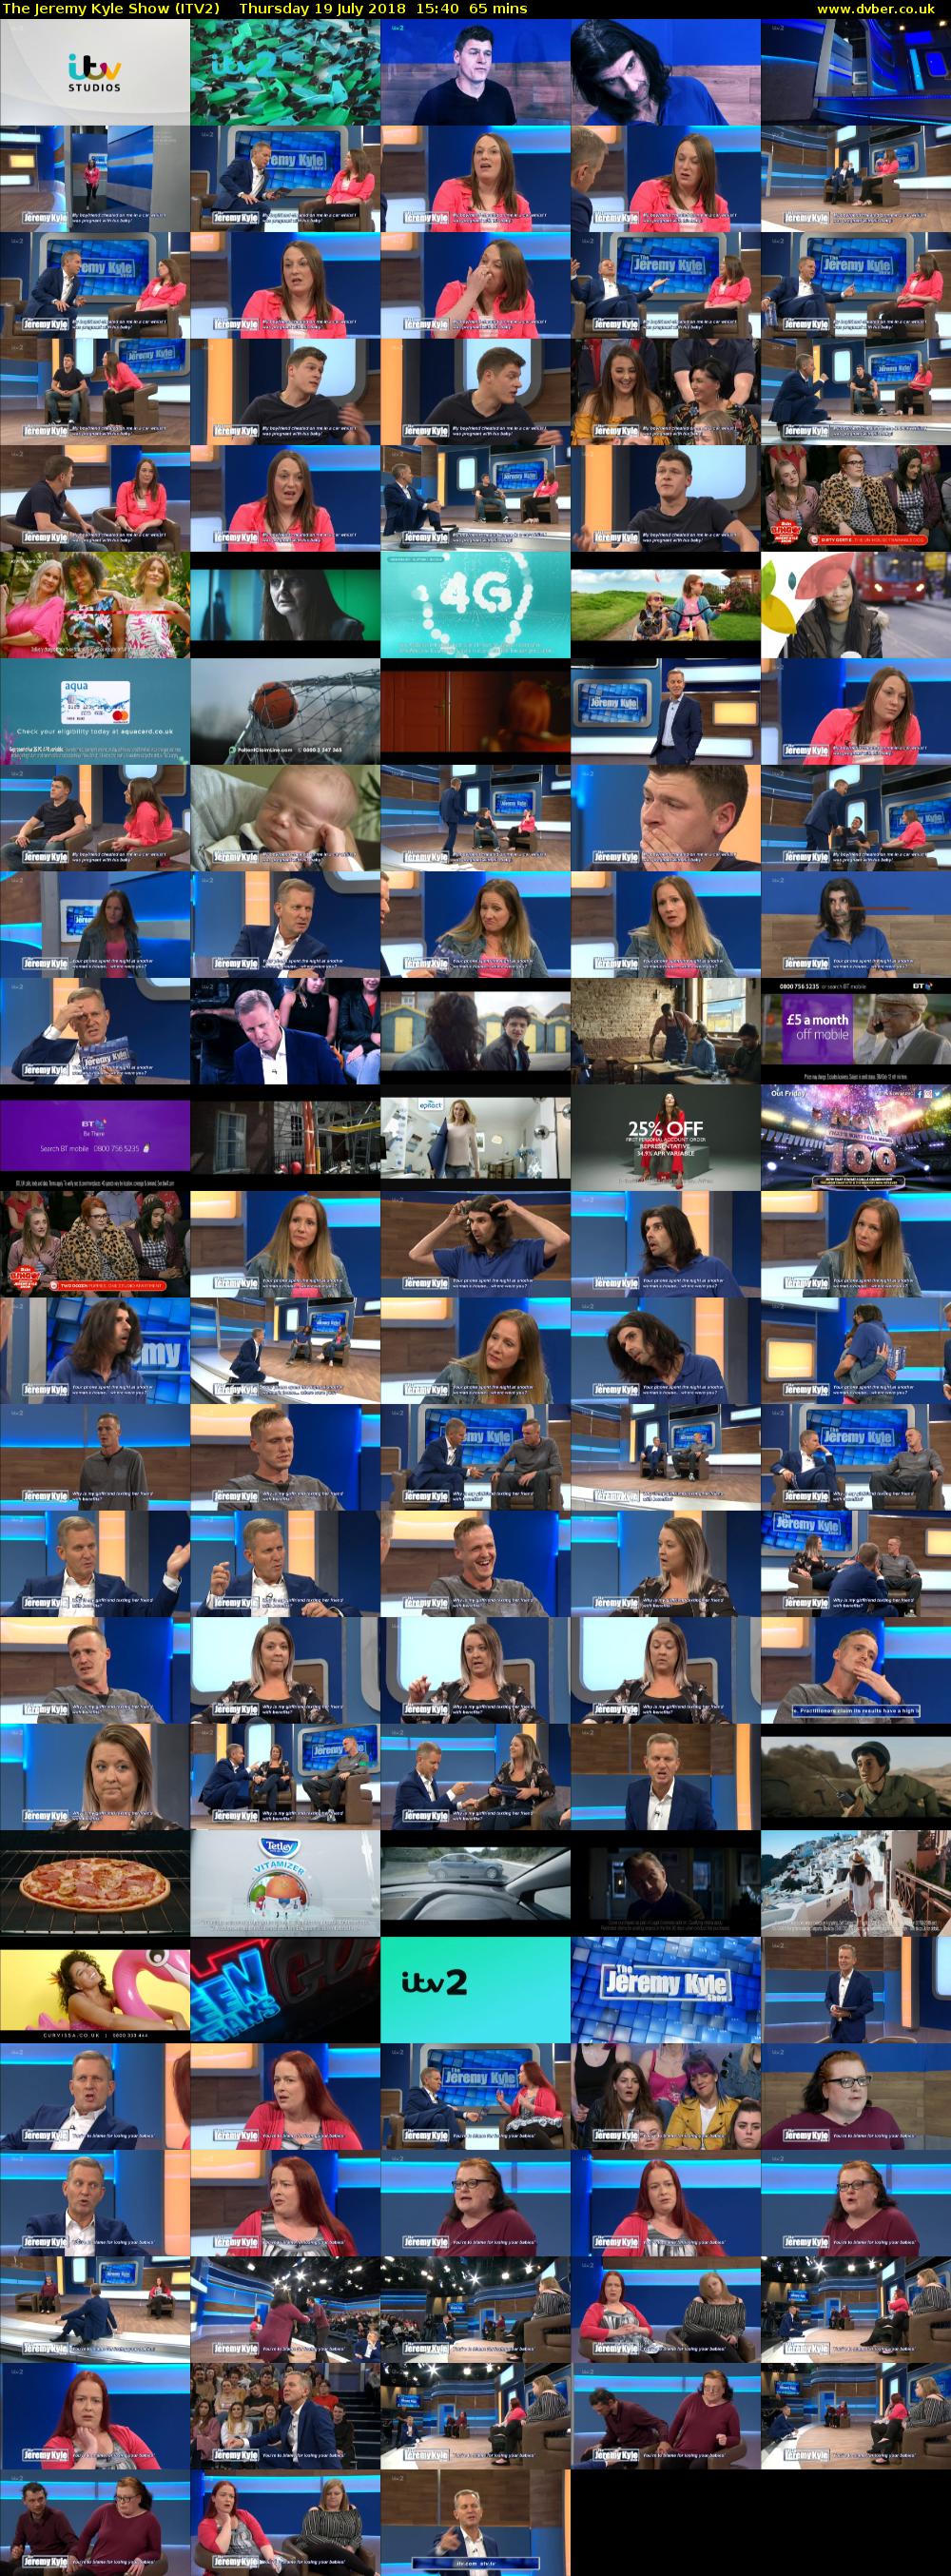 The Jeremy Kyle Show (ITV2) Thursday 19 July 2018 15:40 - 16:45